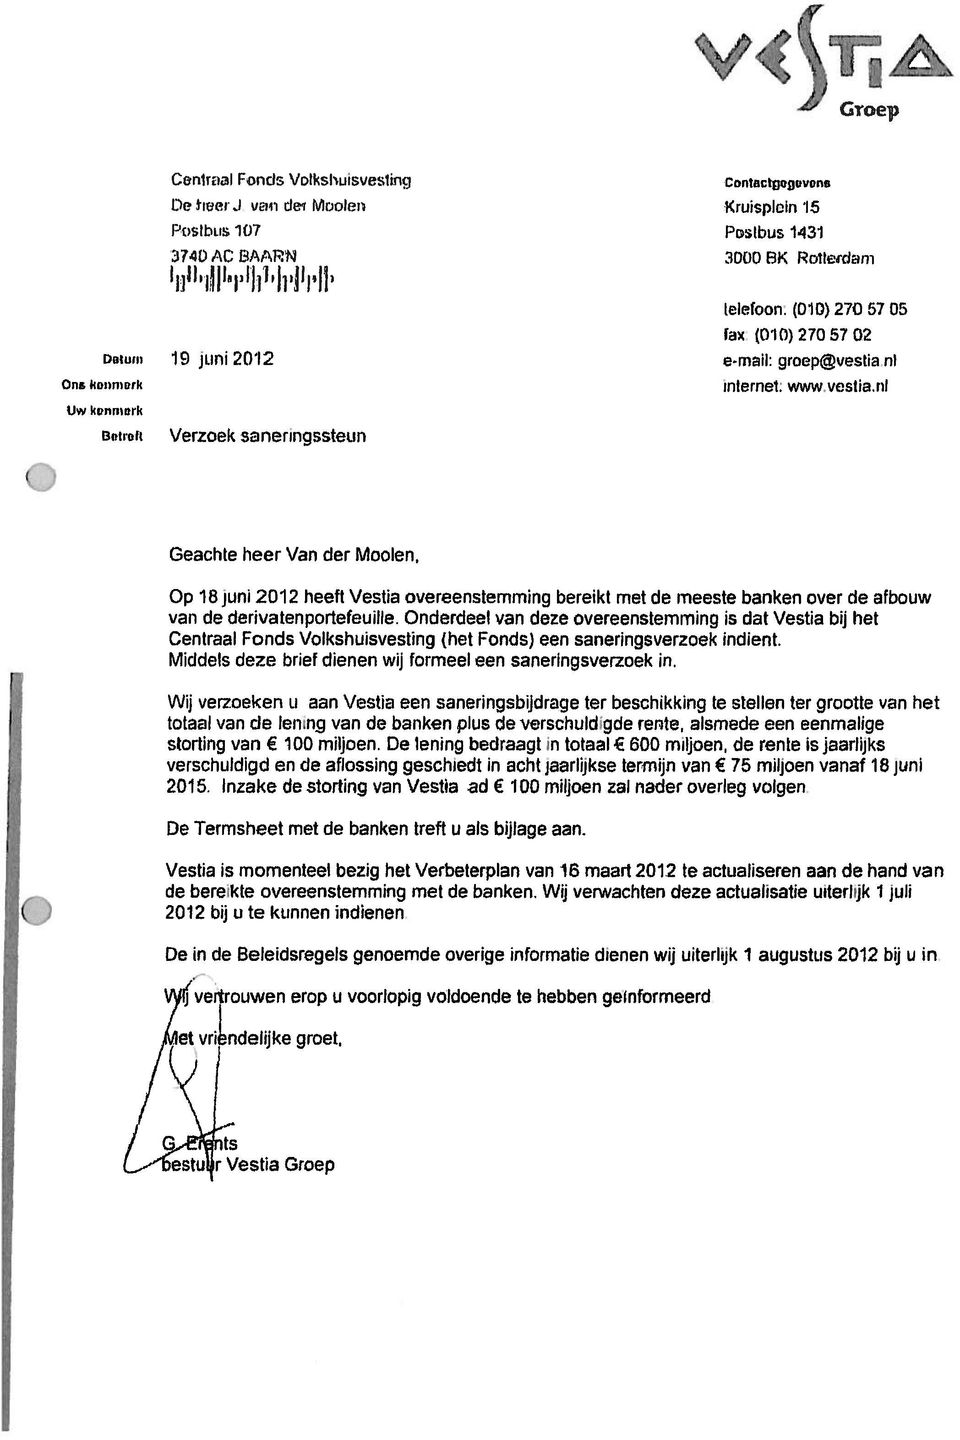 ni Verzoek saneiingbsteun Geachte heer Van cier Moolen, Op 18juni2012 heeft \/estia overeenstemminq bereikt met de meeste banken over de afbouw van de demivatenportefeuille.